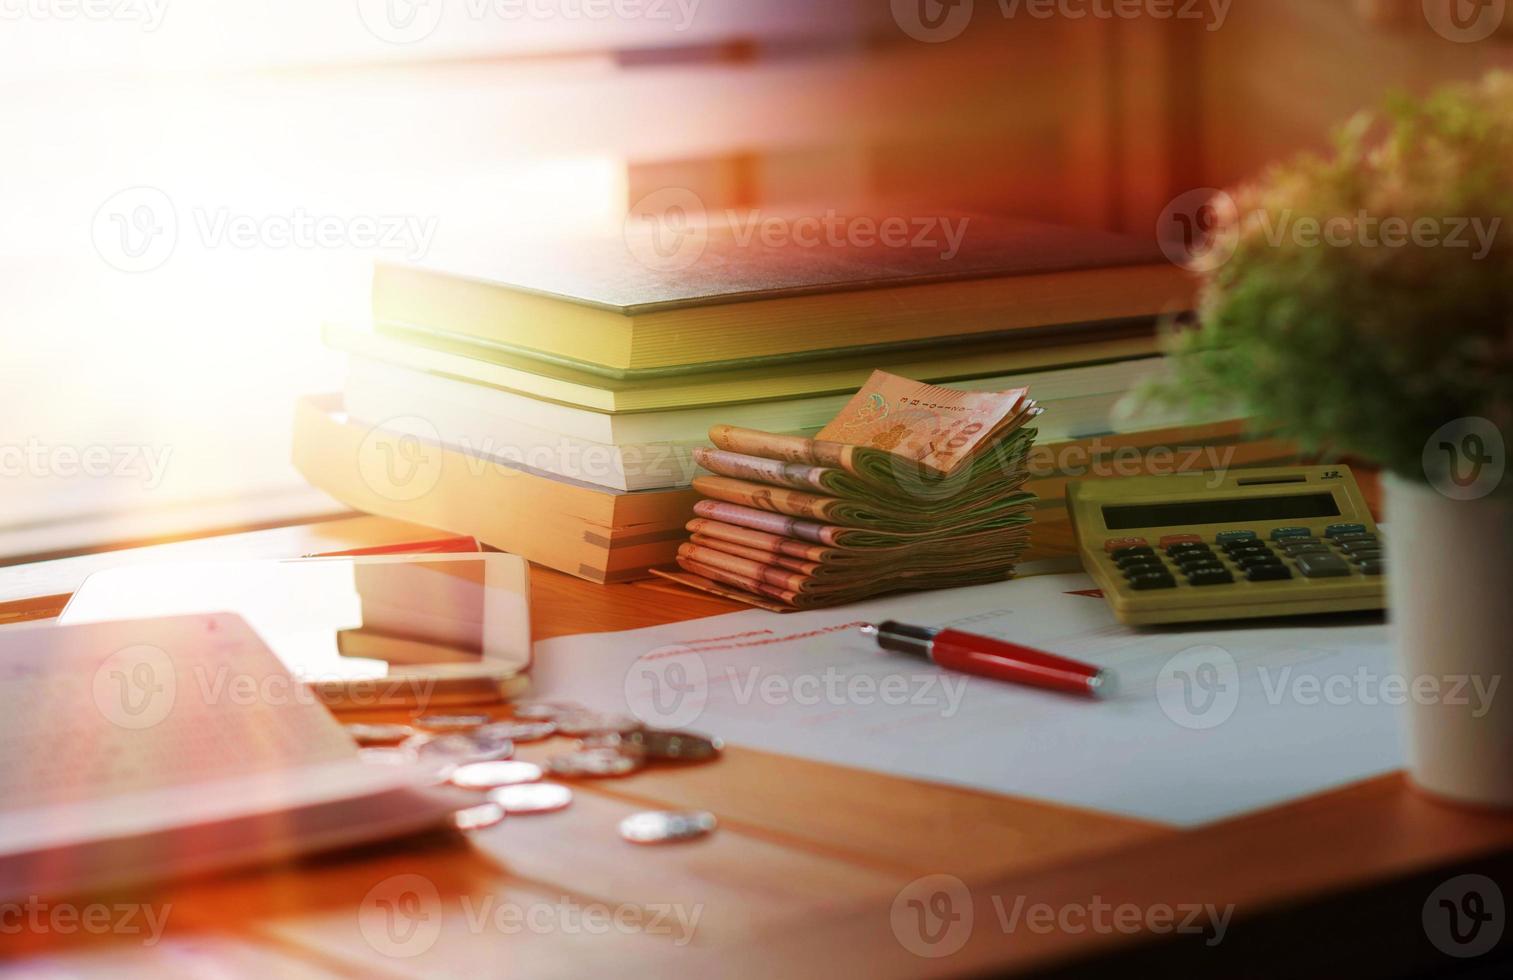 notas e livros na mesa de madeira com moedas e papelada turva foto